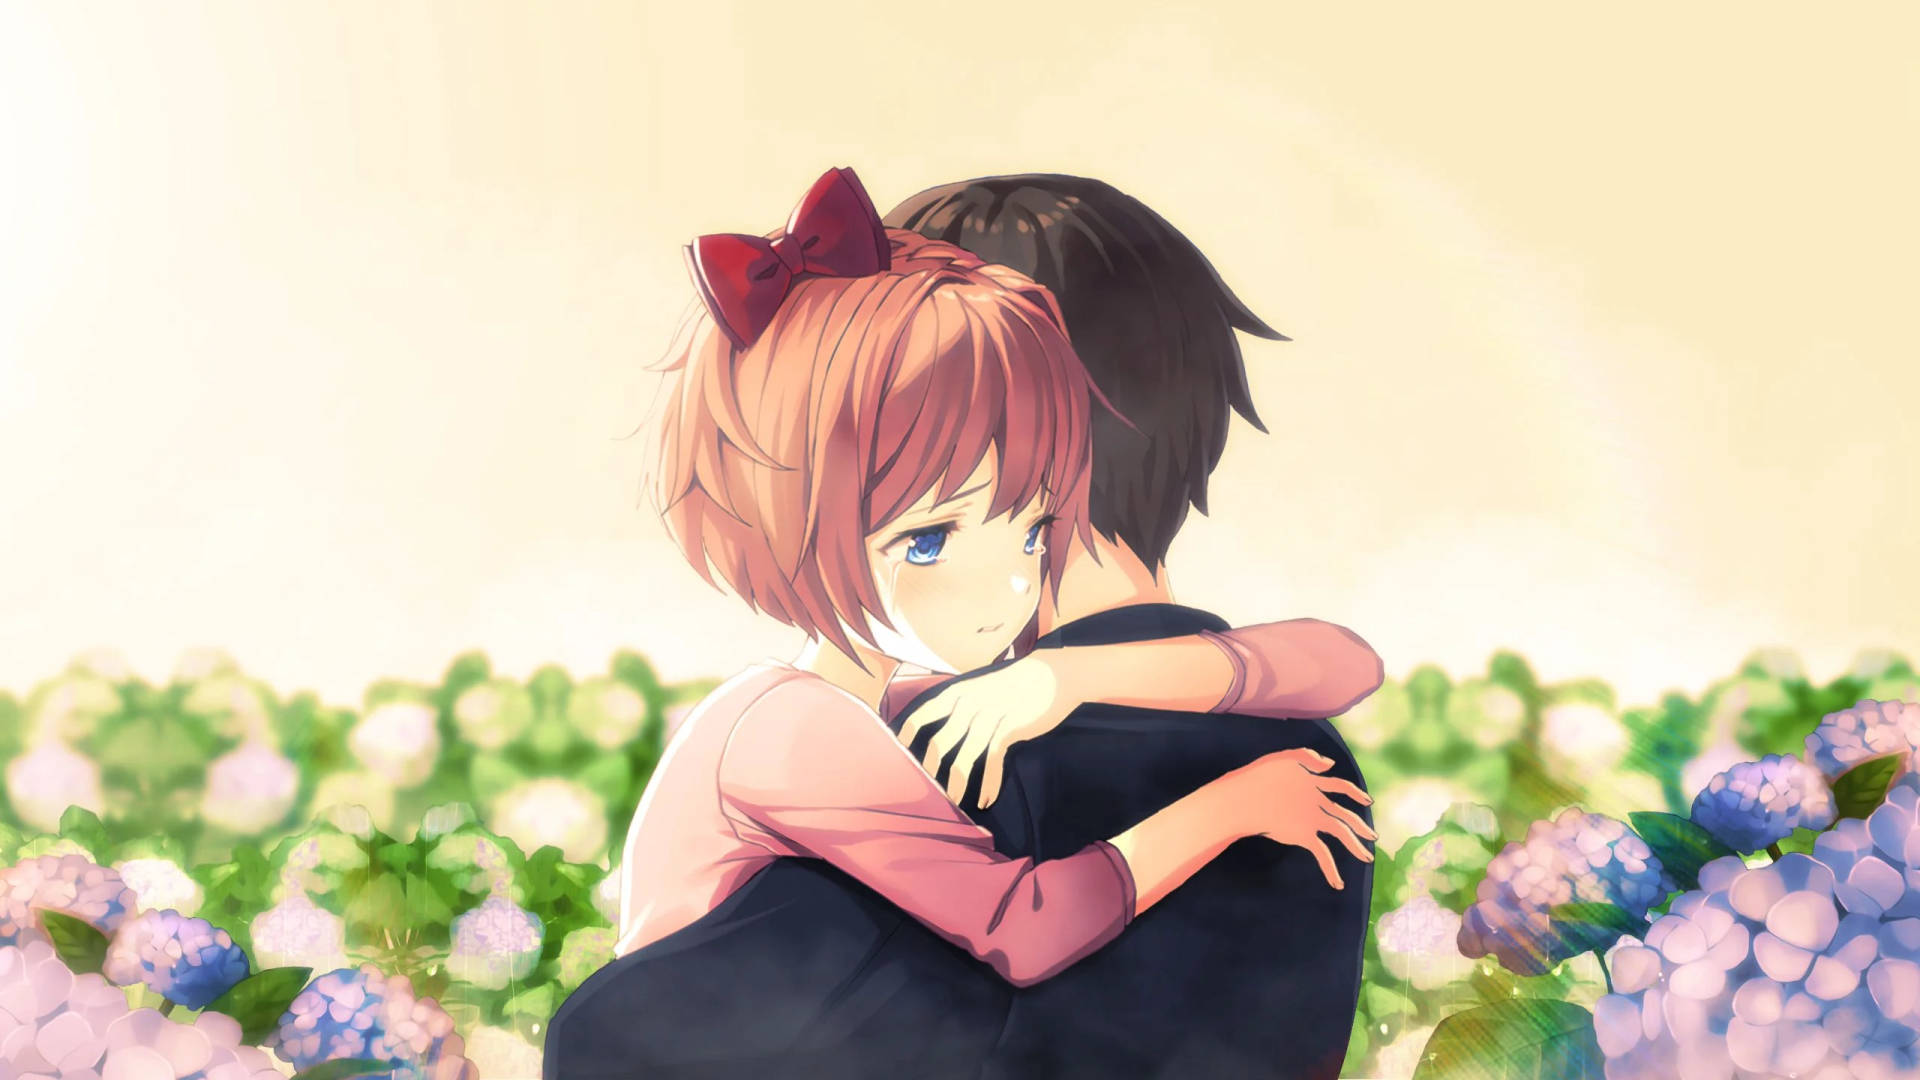 Anime Hug In Flower Garden Wallpaper